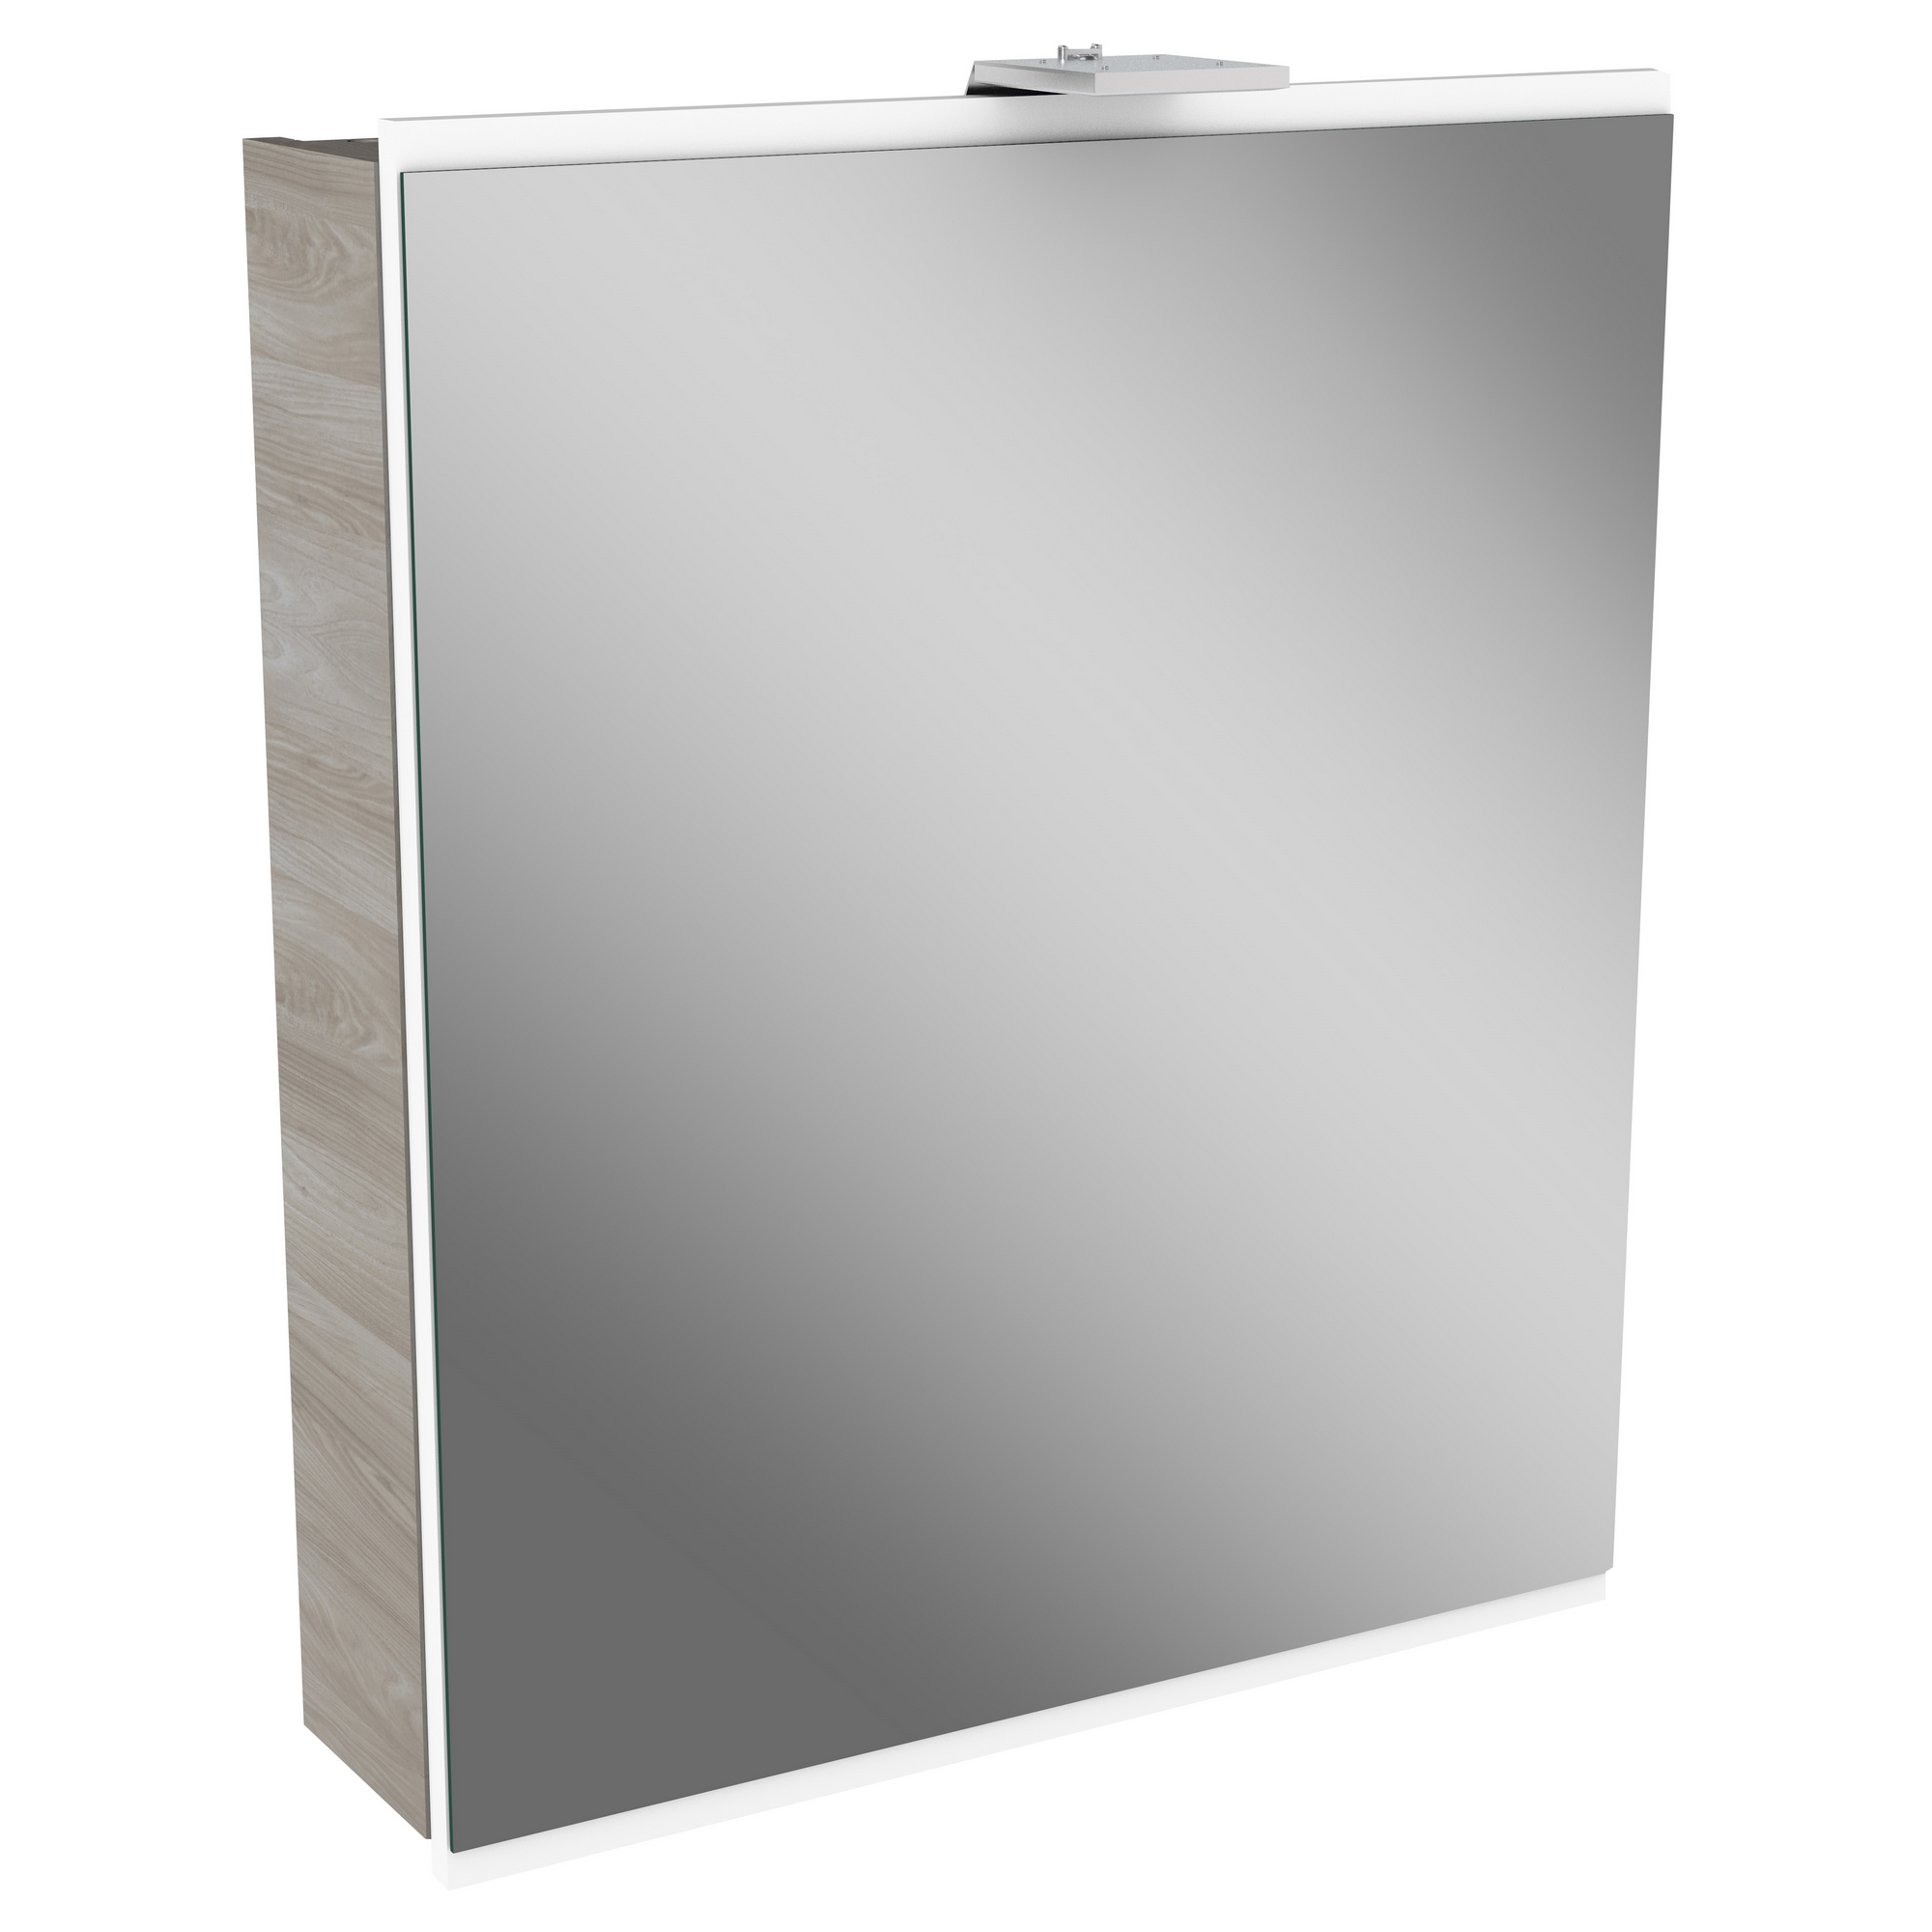 LED-Spiegelschrank 'Lima' steinesche/weiß 60 x 71,2 x 15,3 cm + product picture